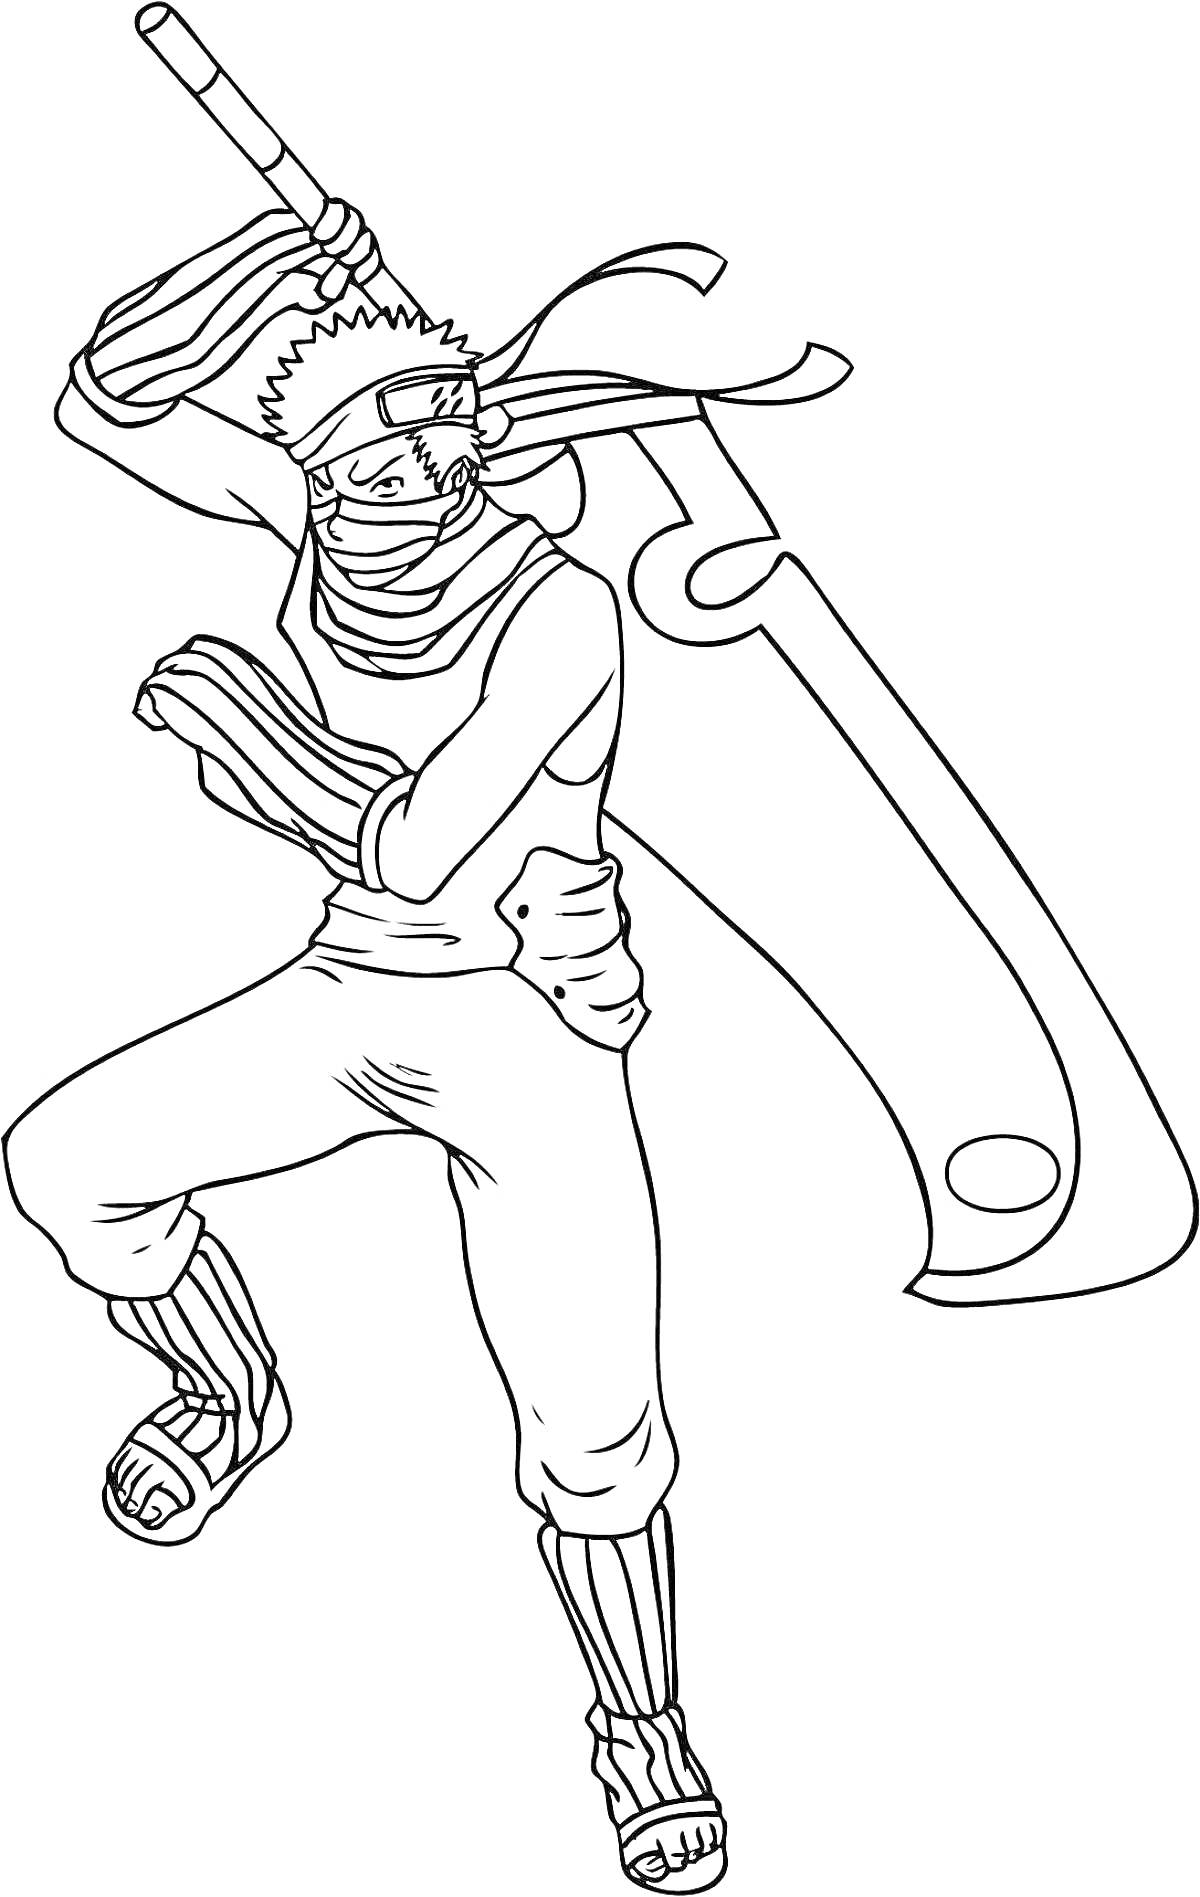 Наруто персонаж с большим мечом на плече, повязкой на голове, повязкой на лице и открытыми сандалиями